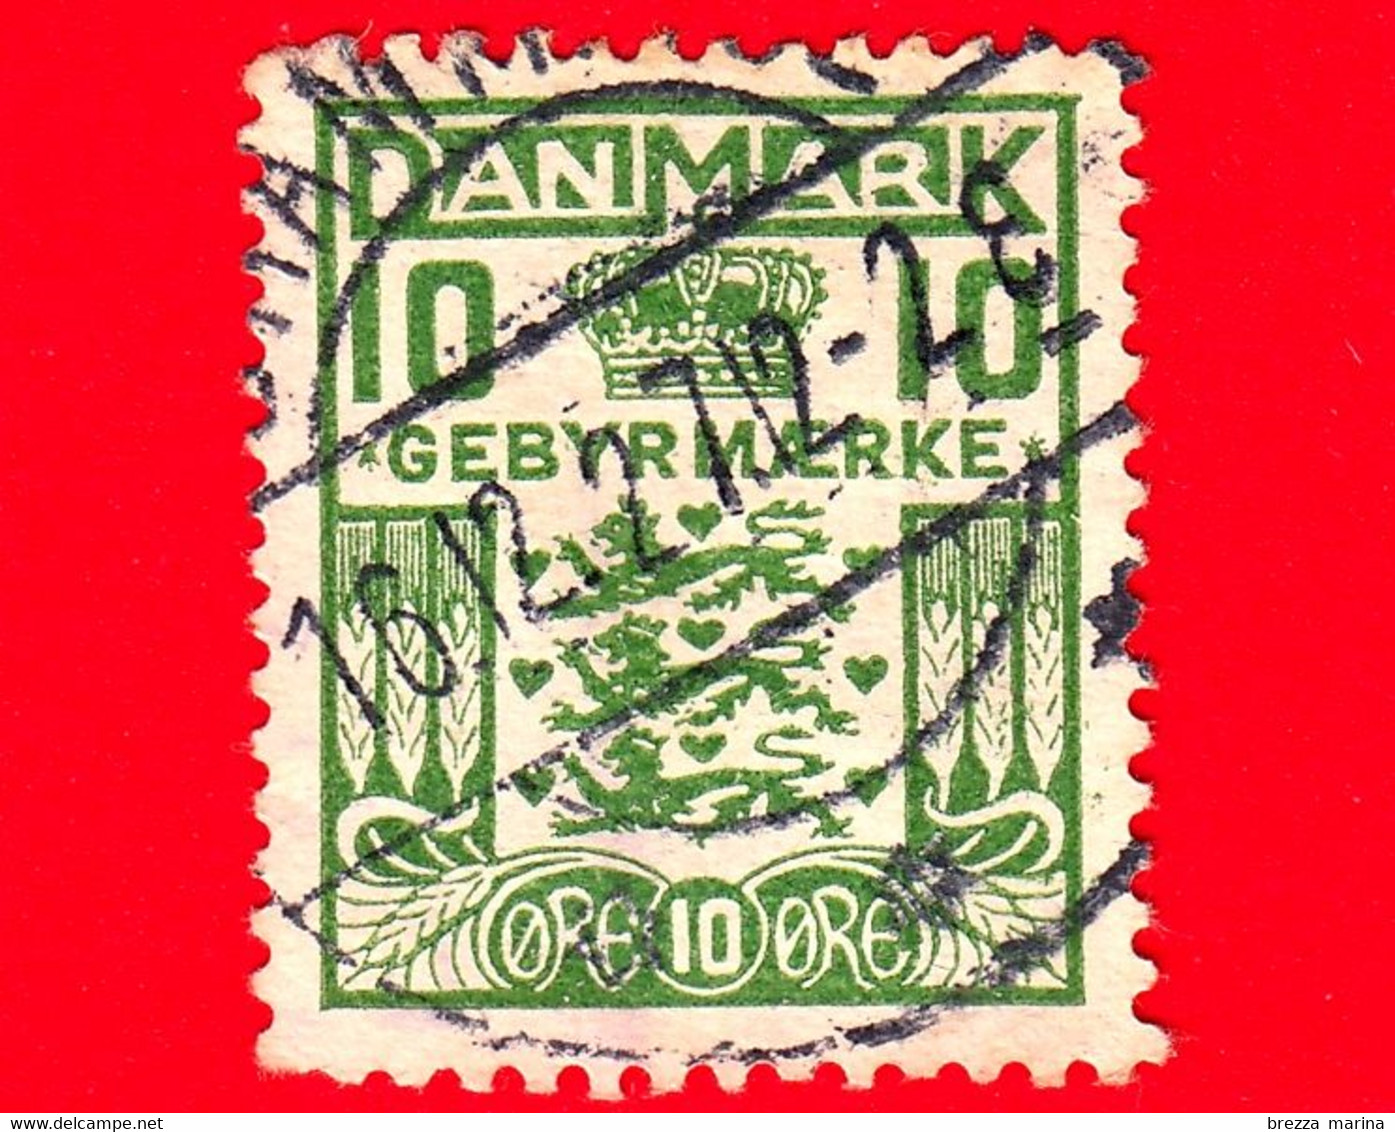 DANIMARCA - Danmark - Usato - 1926 - Tasse Postali - Marche Da Bollo - Corone E Diademi - Crest And Crown - 10 - Fiscale Zegels